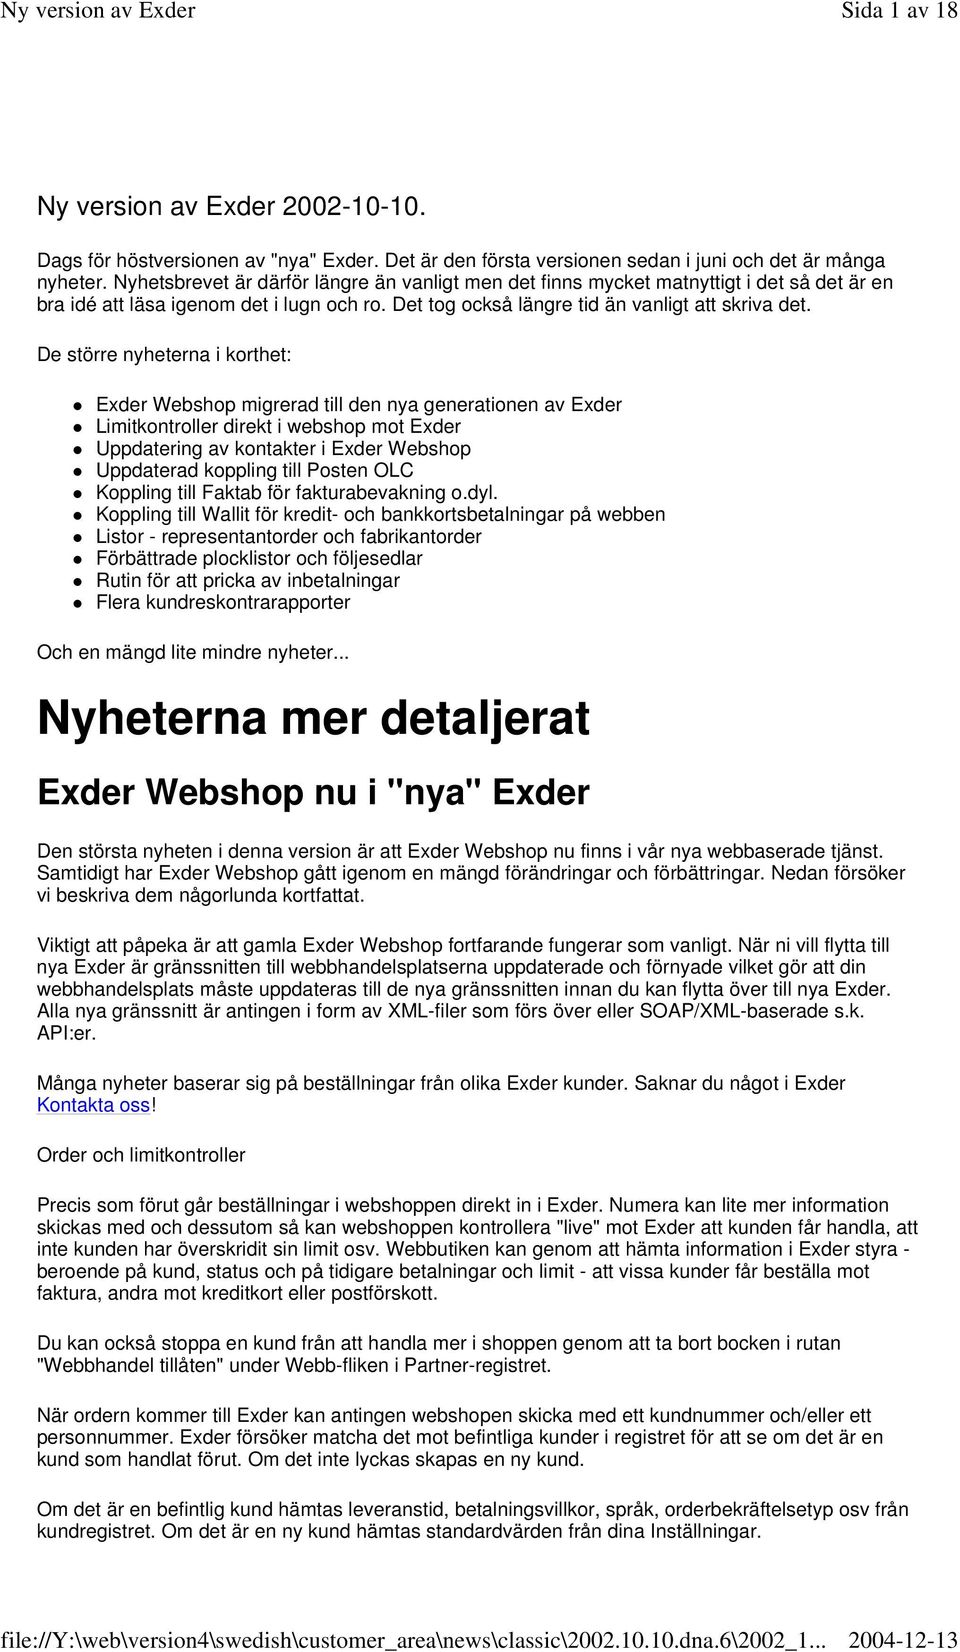 De större nyheterna i korthet: Exder Webshop migrerad till den nya generationen av Exder Limitkontroller direkt i webshop mot Exder Uppdatering av kontakter i Exder Webshop Uppdaterad koppling till